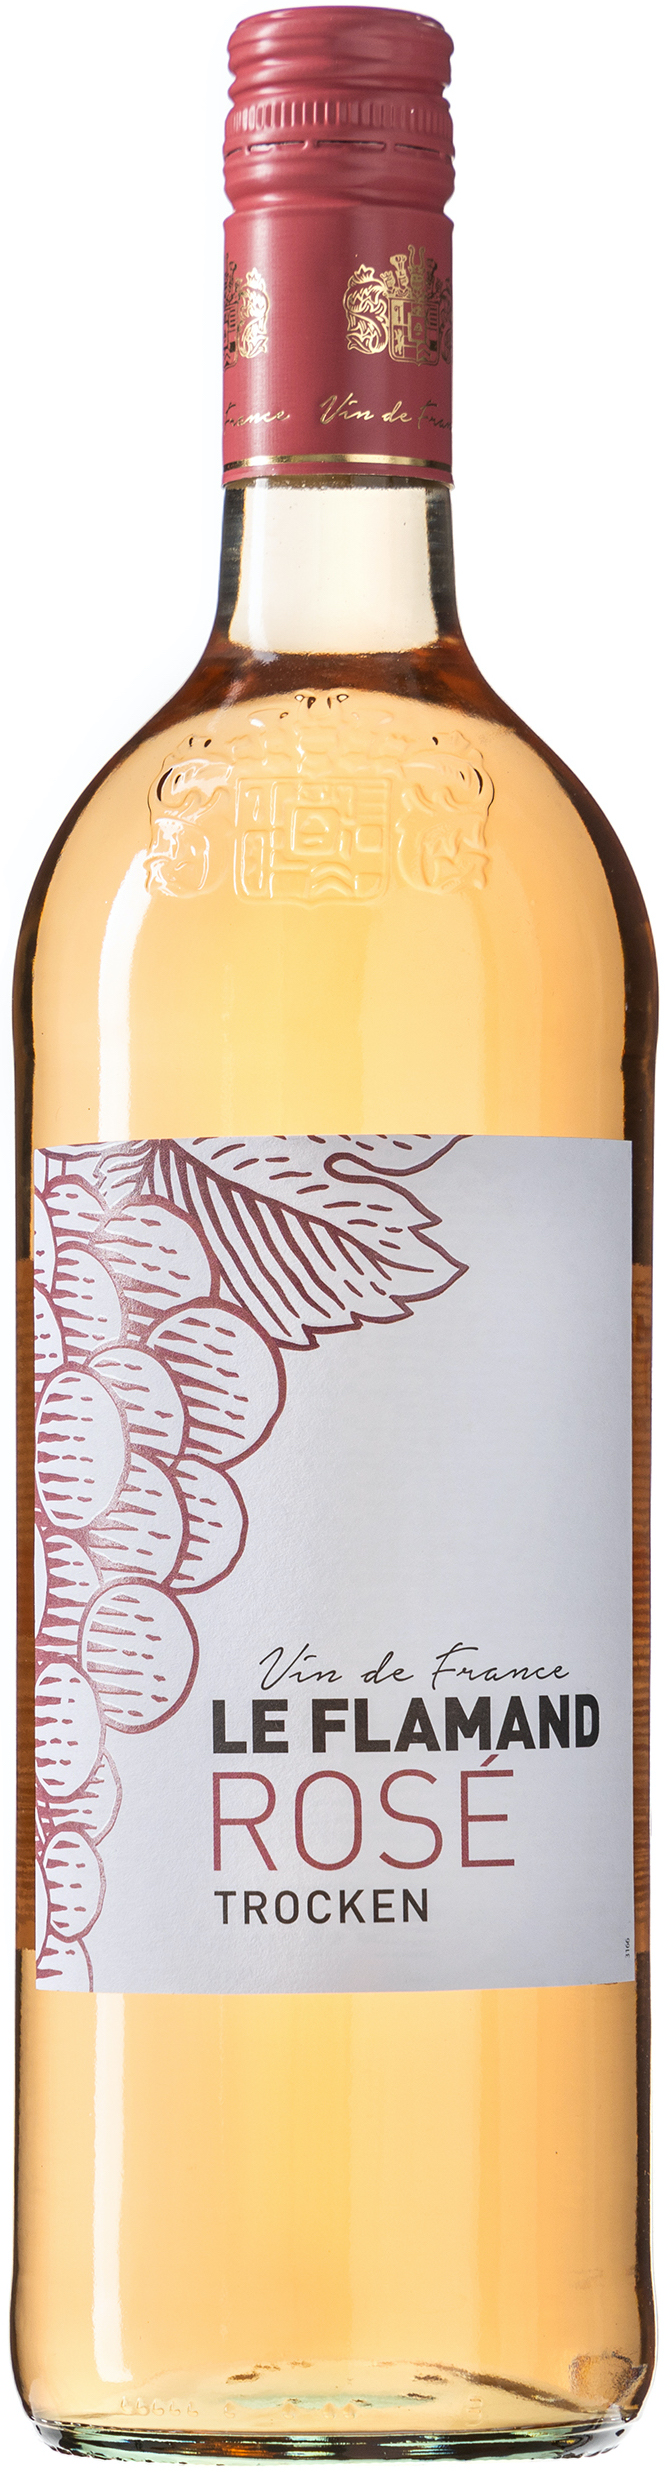 Le Flamand Vin de France rosé trocken 12% vol. 1,0L